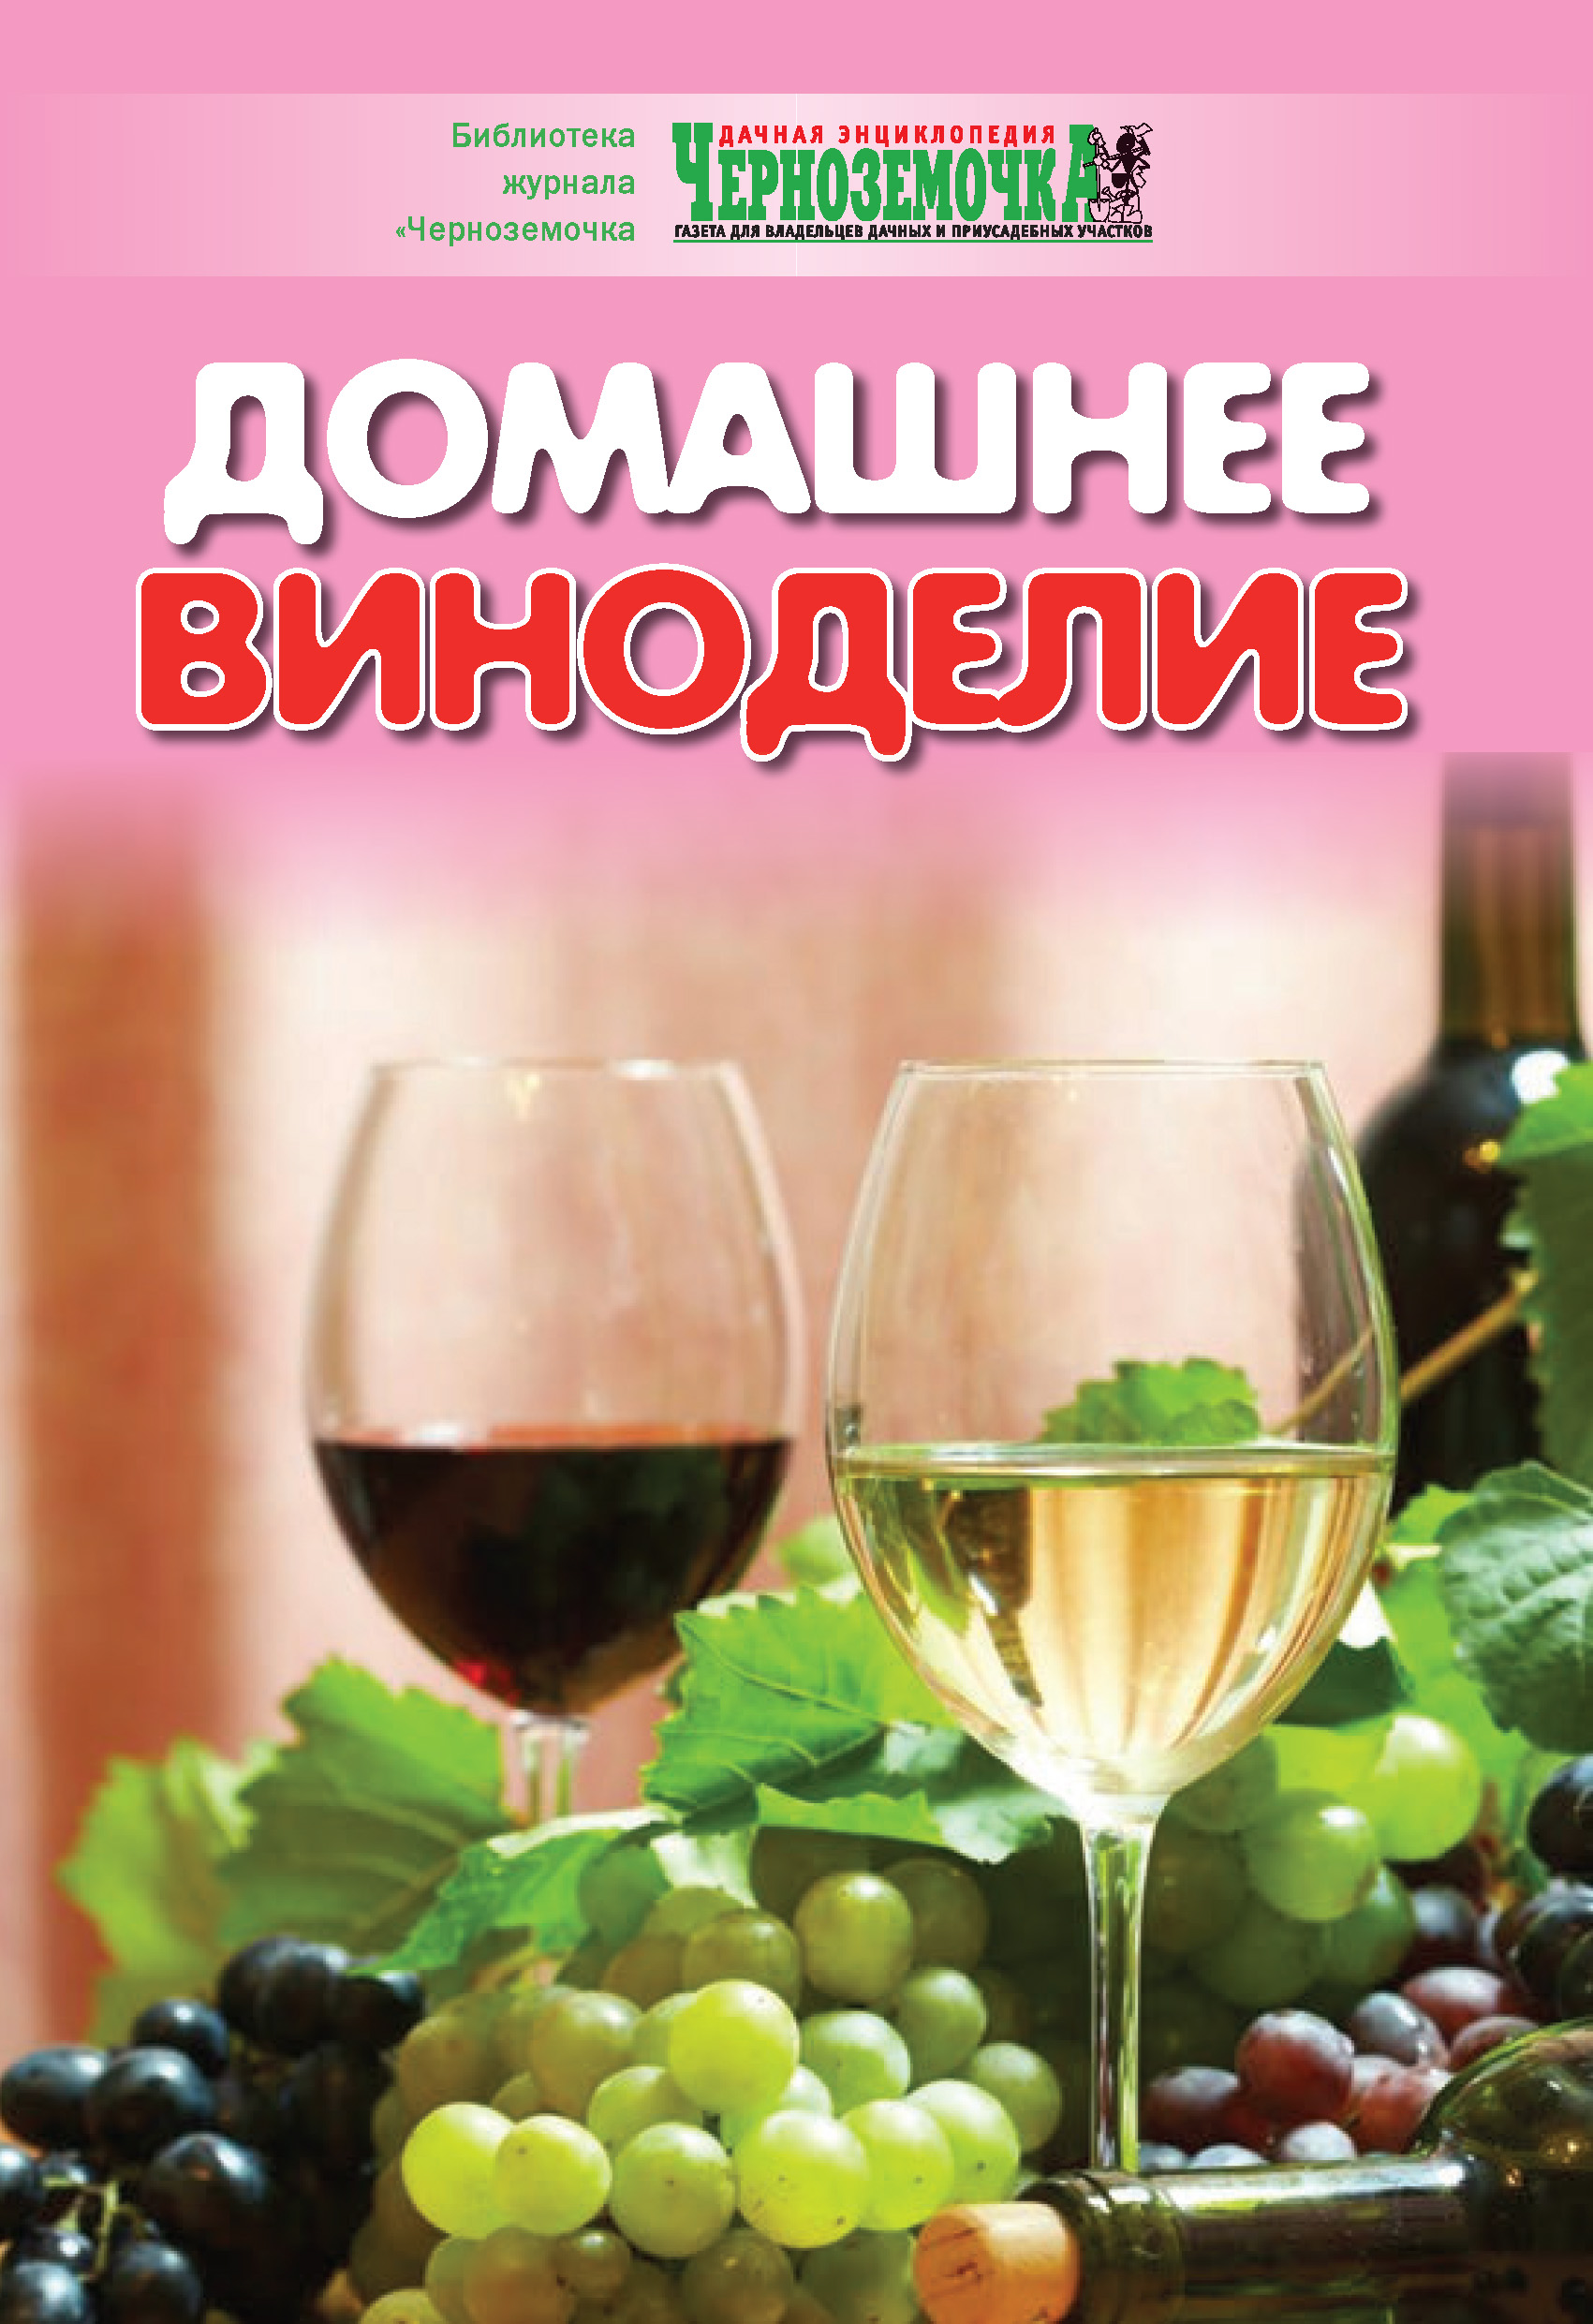 Книга Домашнее виноделие из серии , созданная А. Панкратова, может относится к жанру Хобби, Ремесла, Кулинария. Стоимость электронной книги Домашнее виноделие с идентификатором 8909331 составляет 14.99 руб.